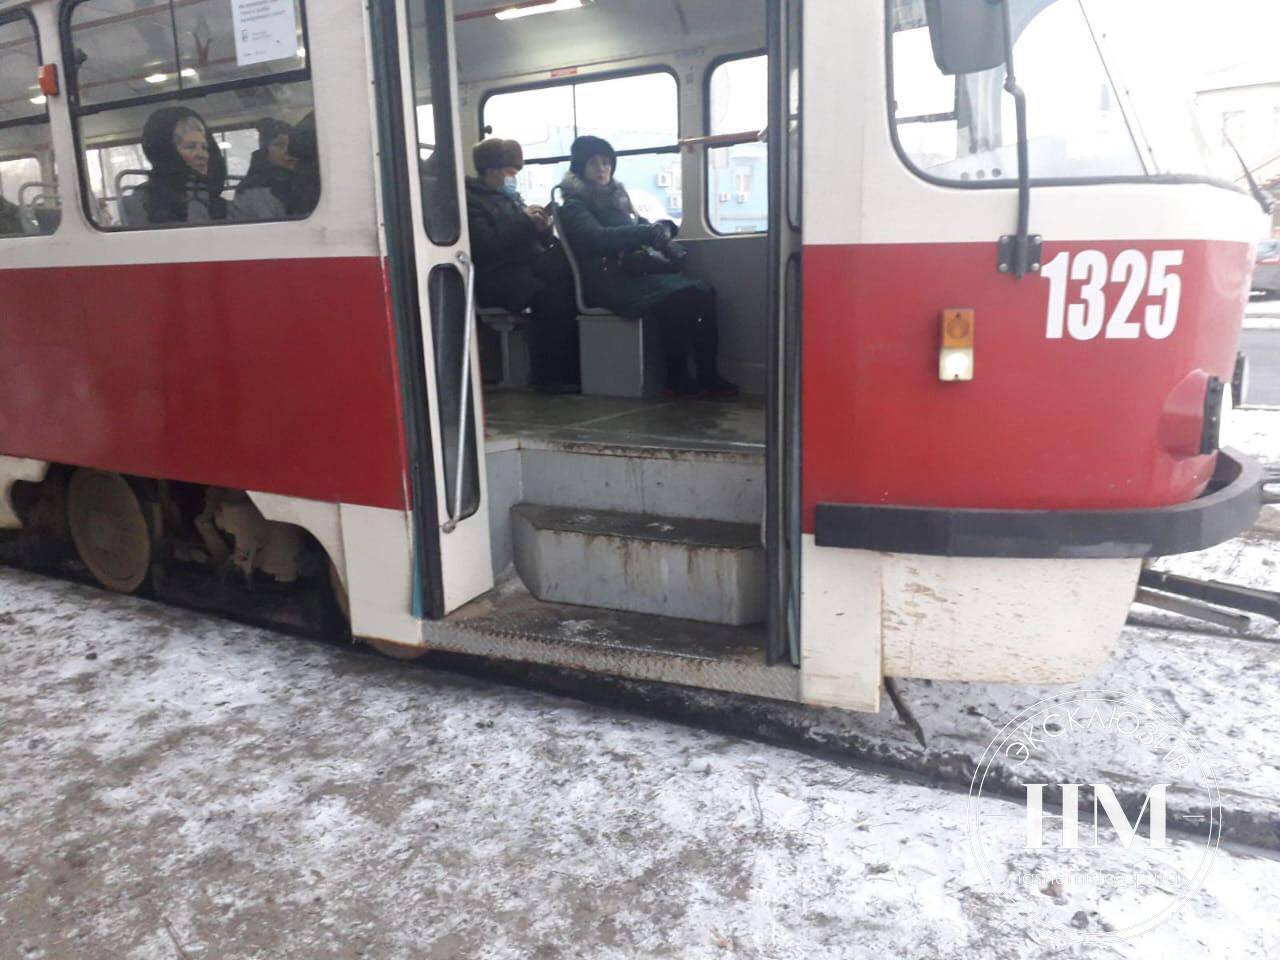 Школьник громил трамвай, а пассажиры смотрели - новости Днепра